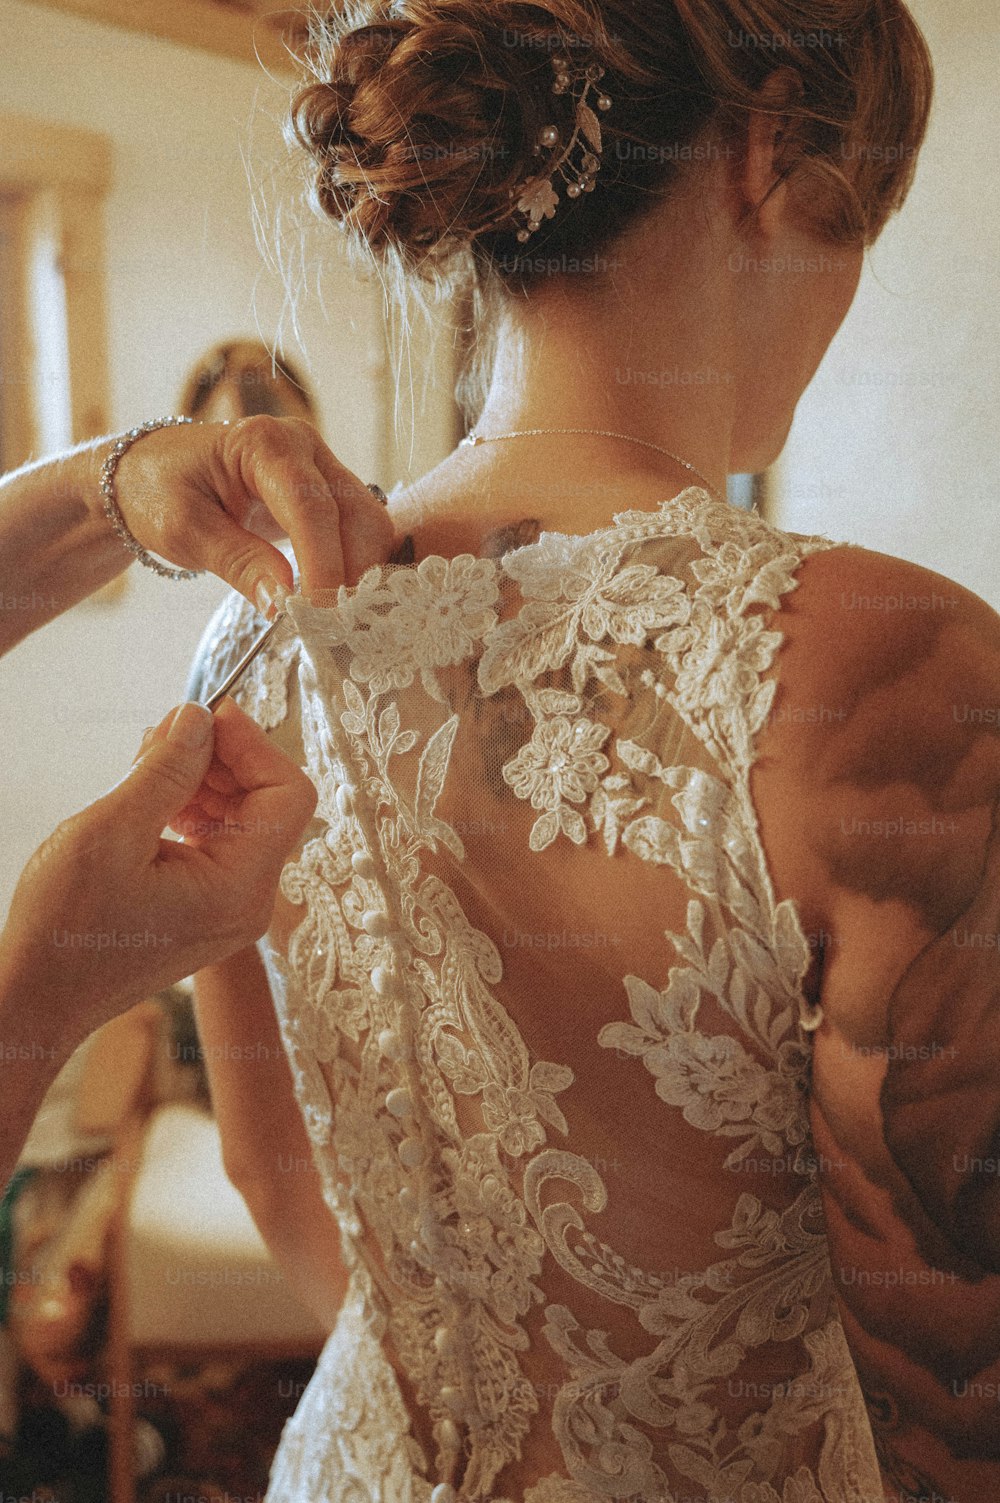 Eine Frau in einem Hochzeitskleid, die sich auf ihre Hochzeit vorbereitet